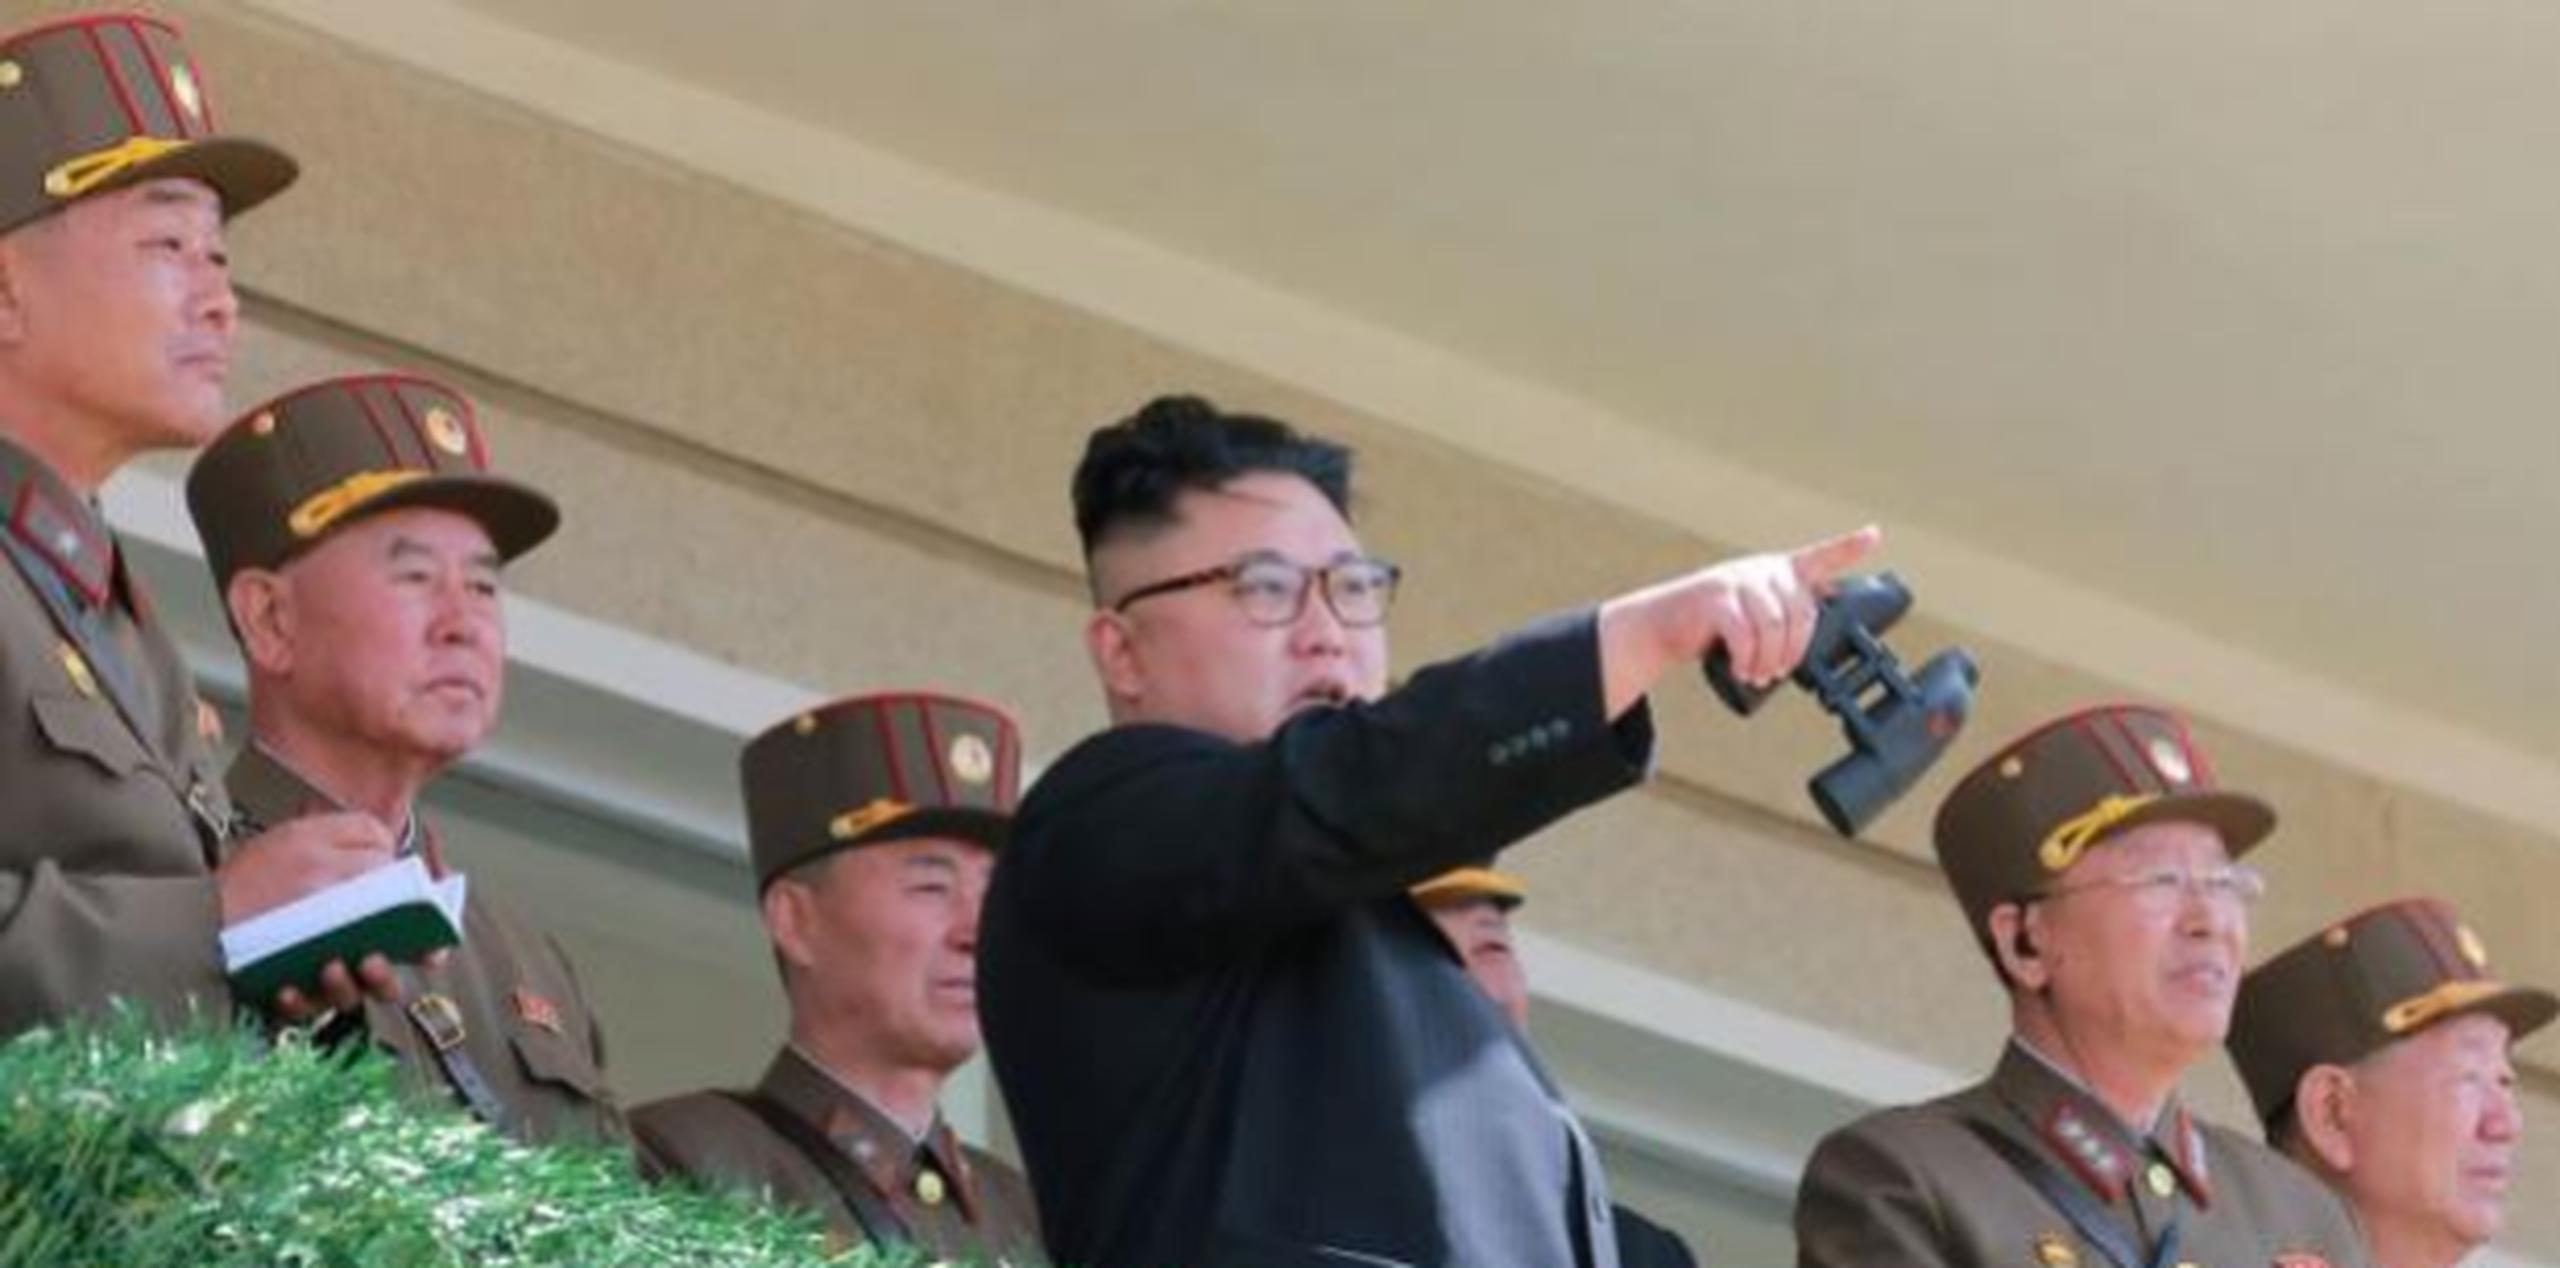 Corea del Norte dijo que frente al envío "insensato" del grupo aeronaval está dispuesta a "ir a la guerra". (GDA)